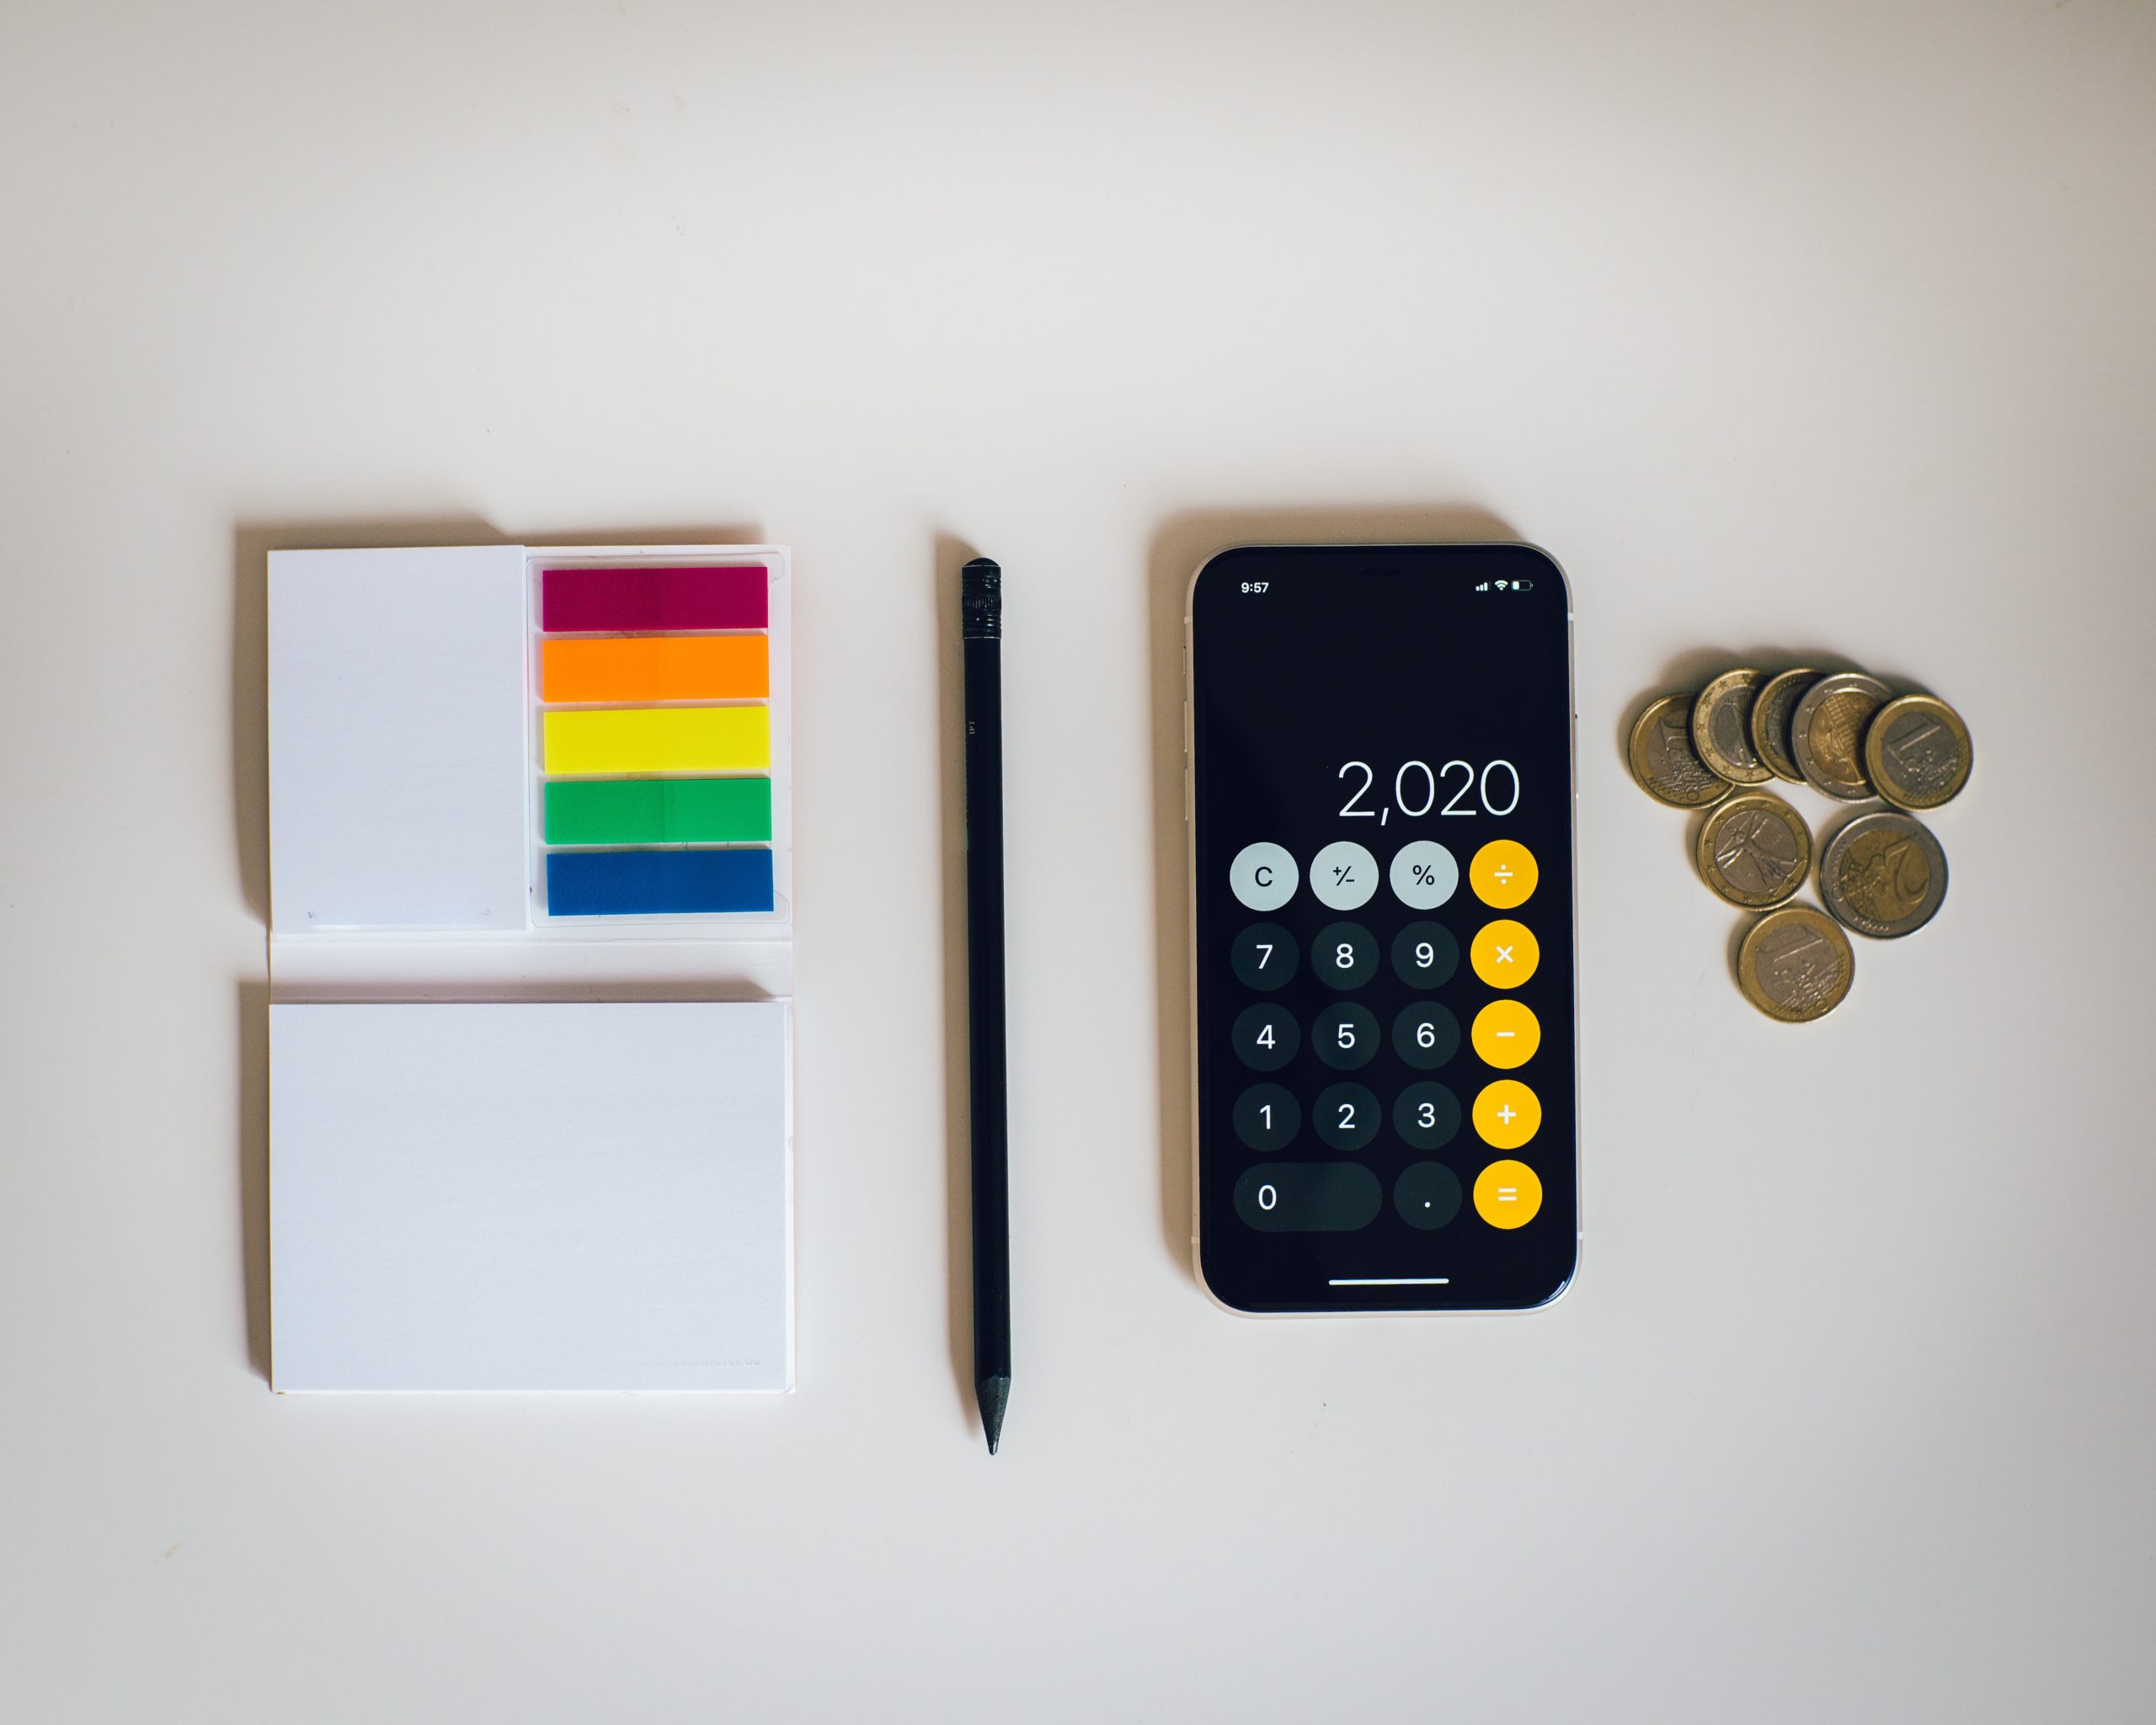 Kalkulator inflacji - sprawdź ile siły nabywczej straciły Twoje pieniądze od ostatniej denominacji (aktualizacja danych za 2021!) • SamodzielnyInwestor.pl